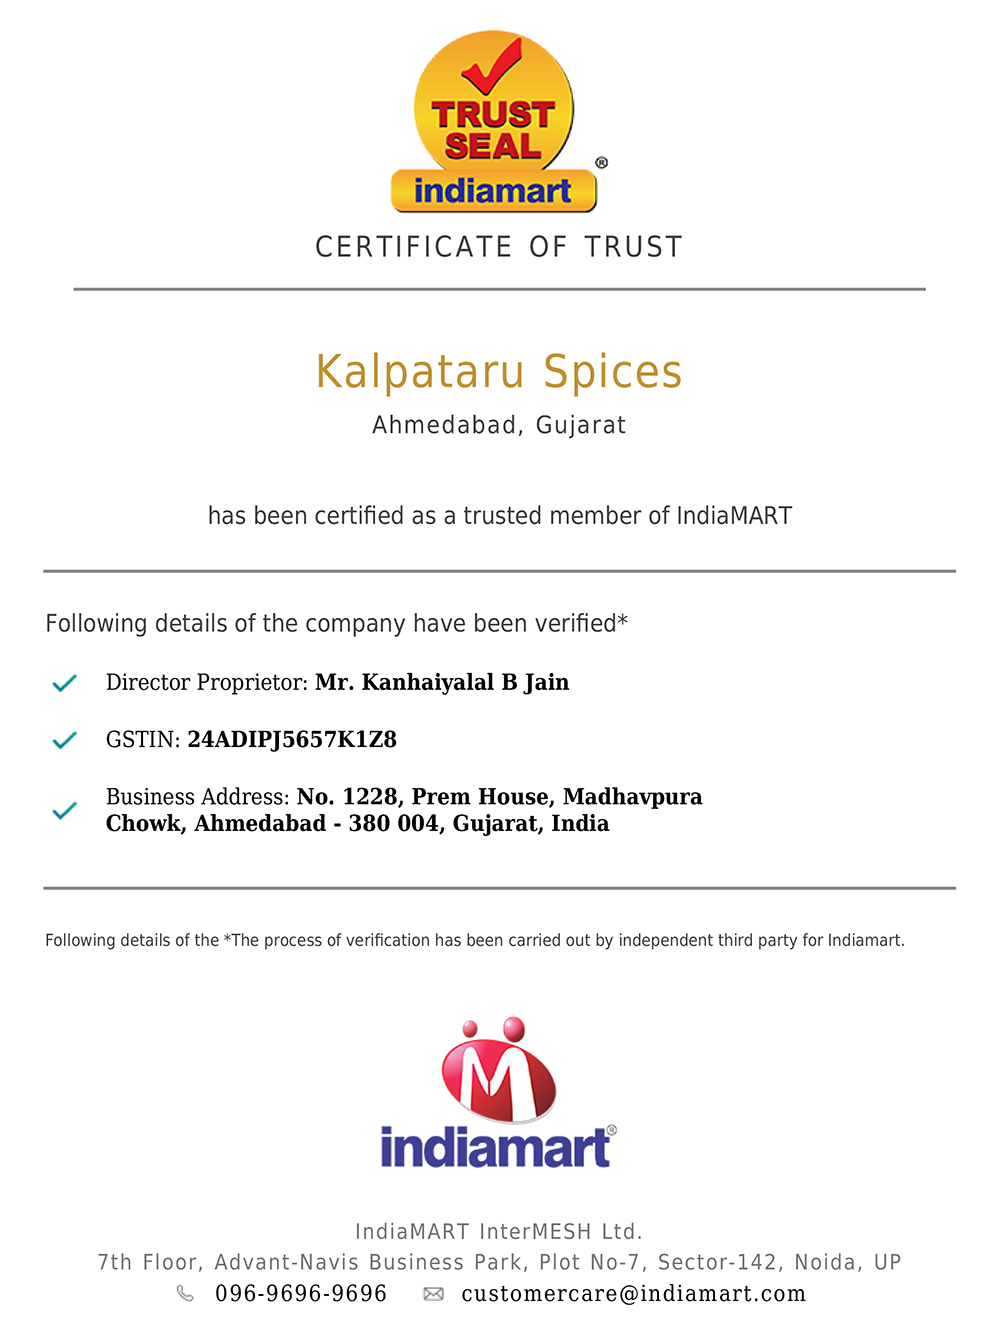 IndiaMart Certificate